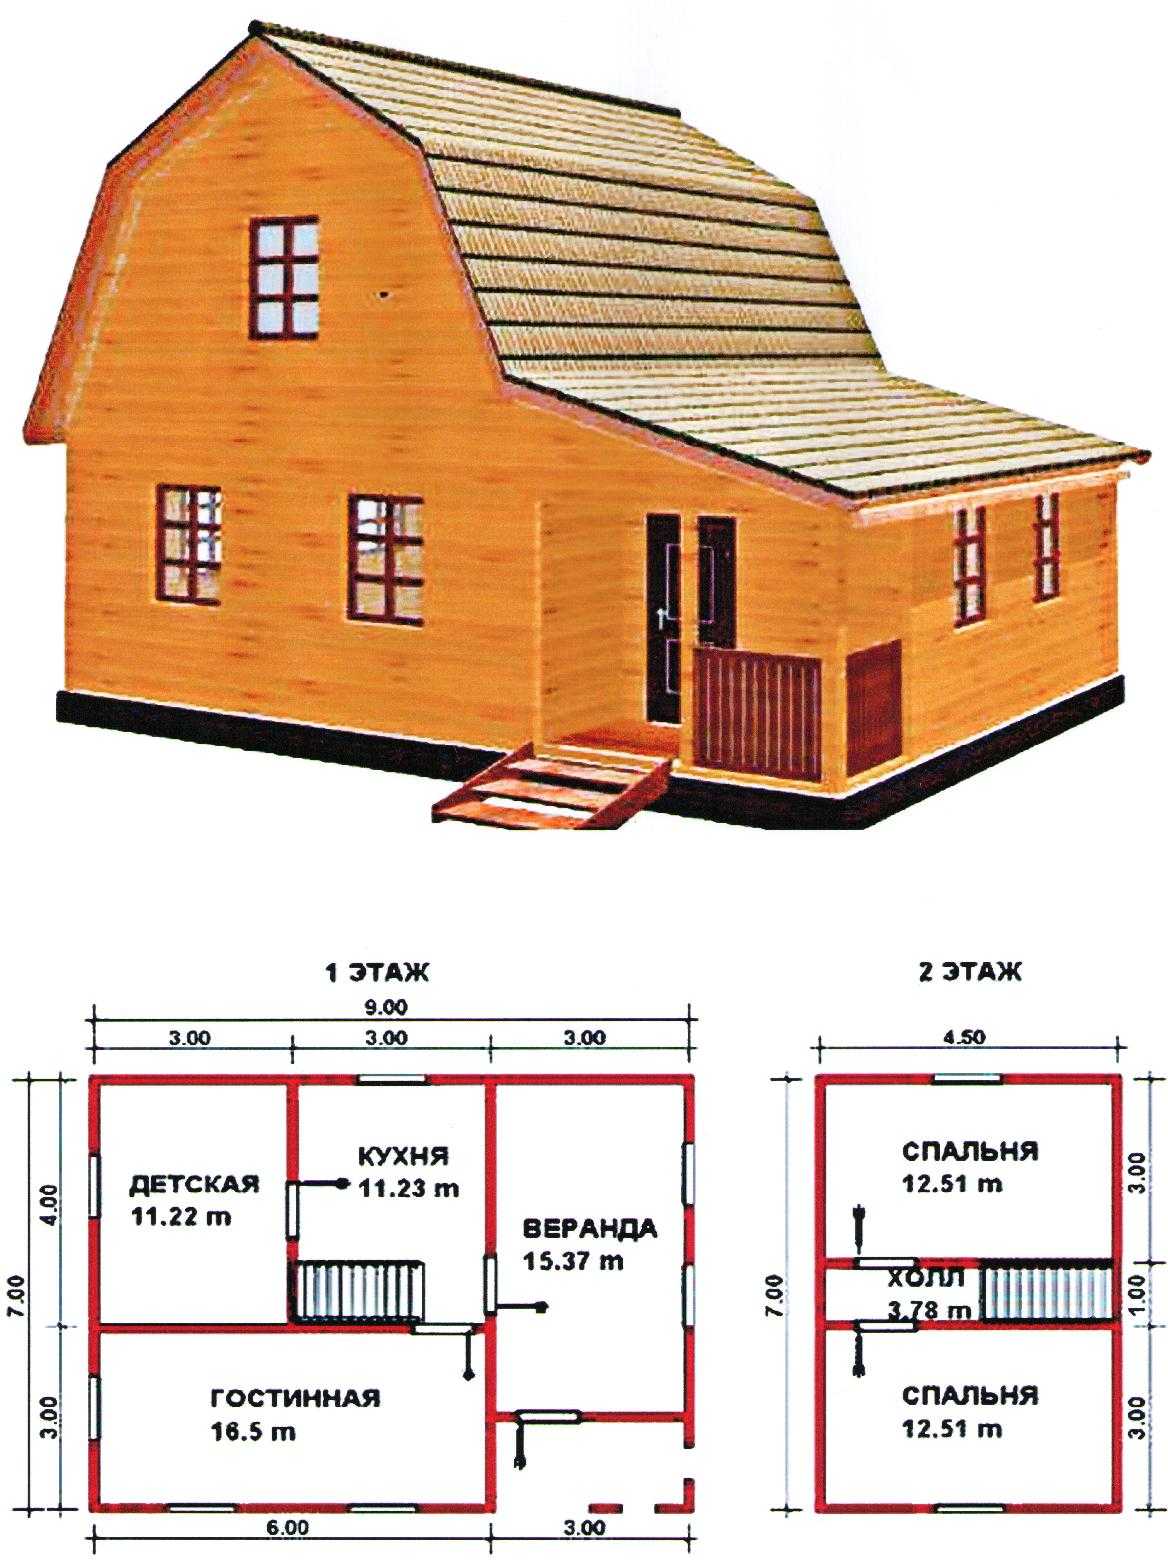 Топ 5 программ для проектирования домов